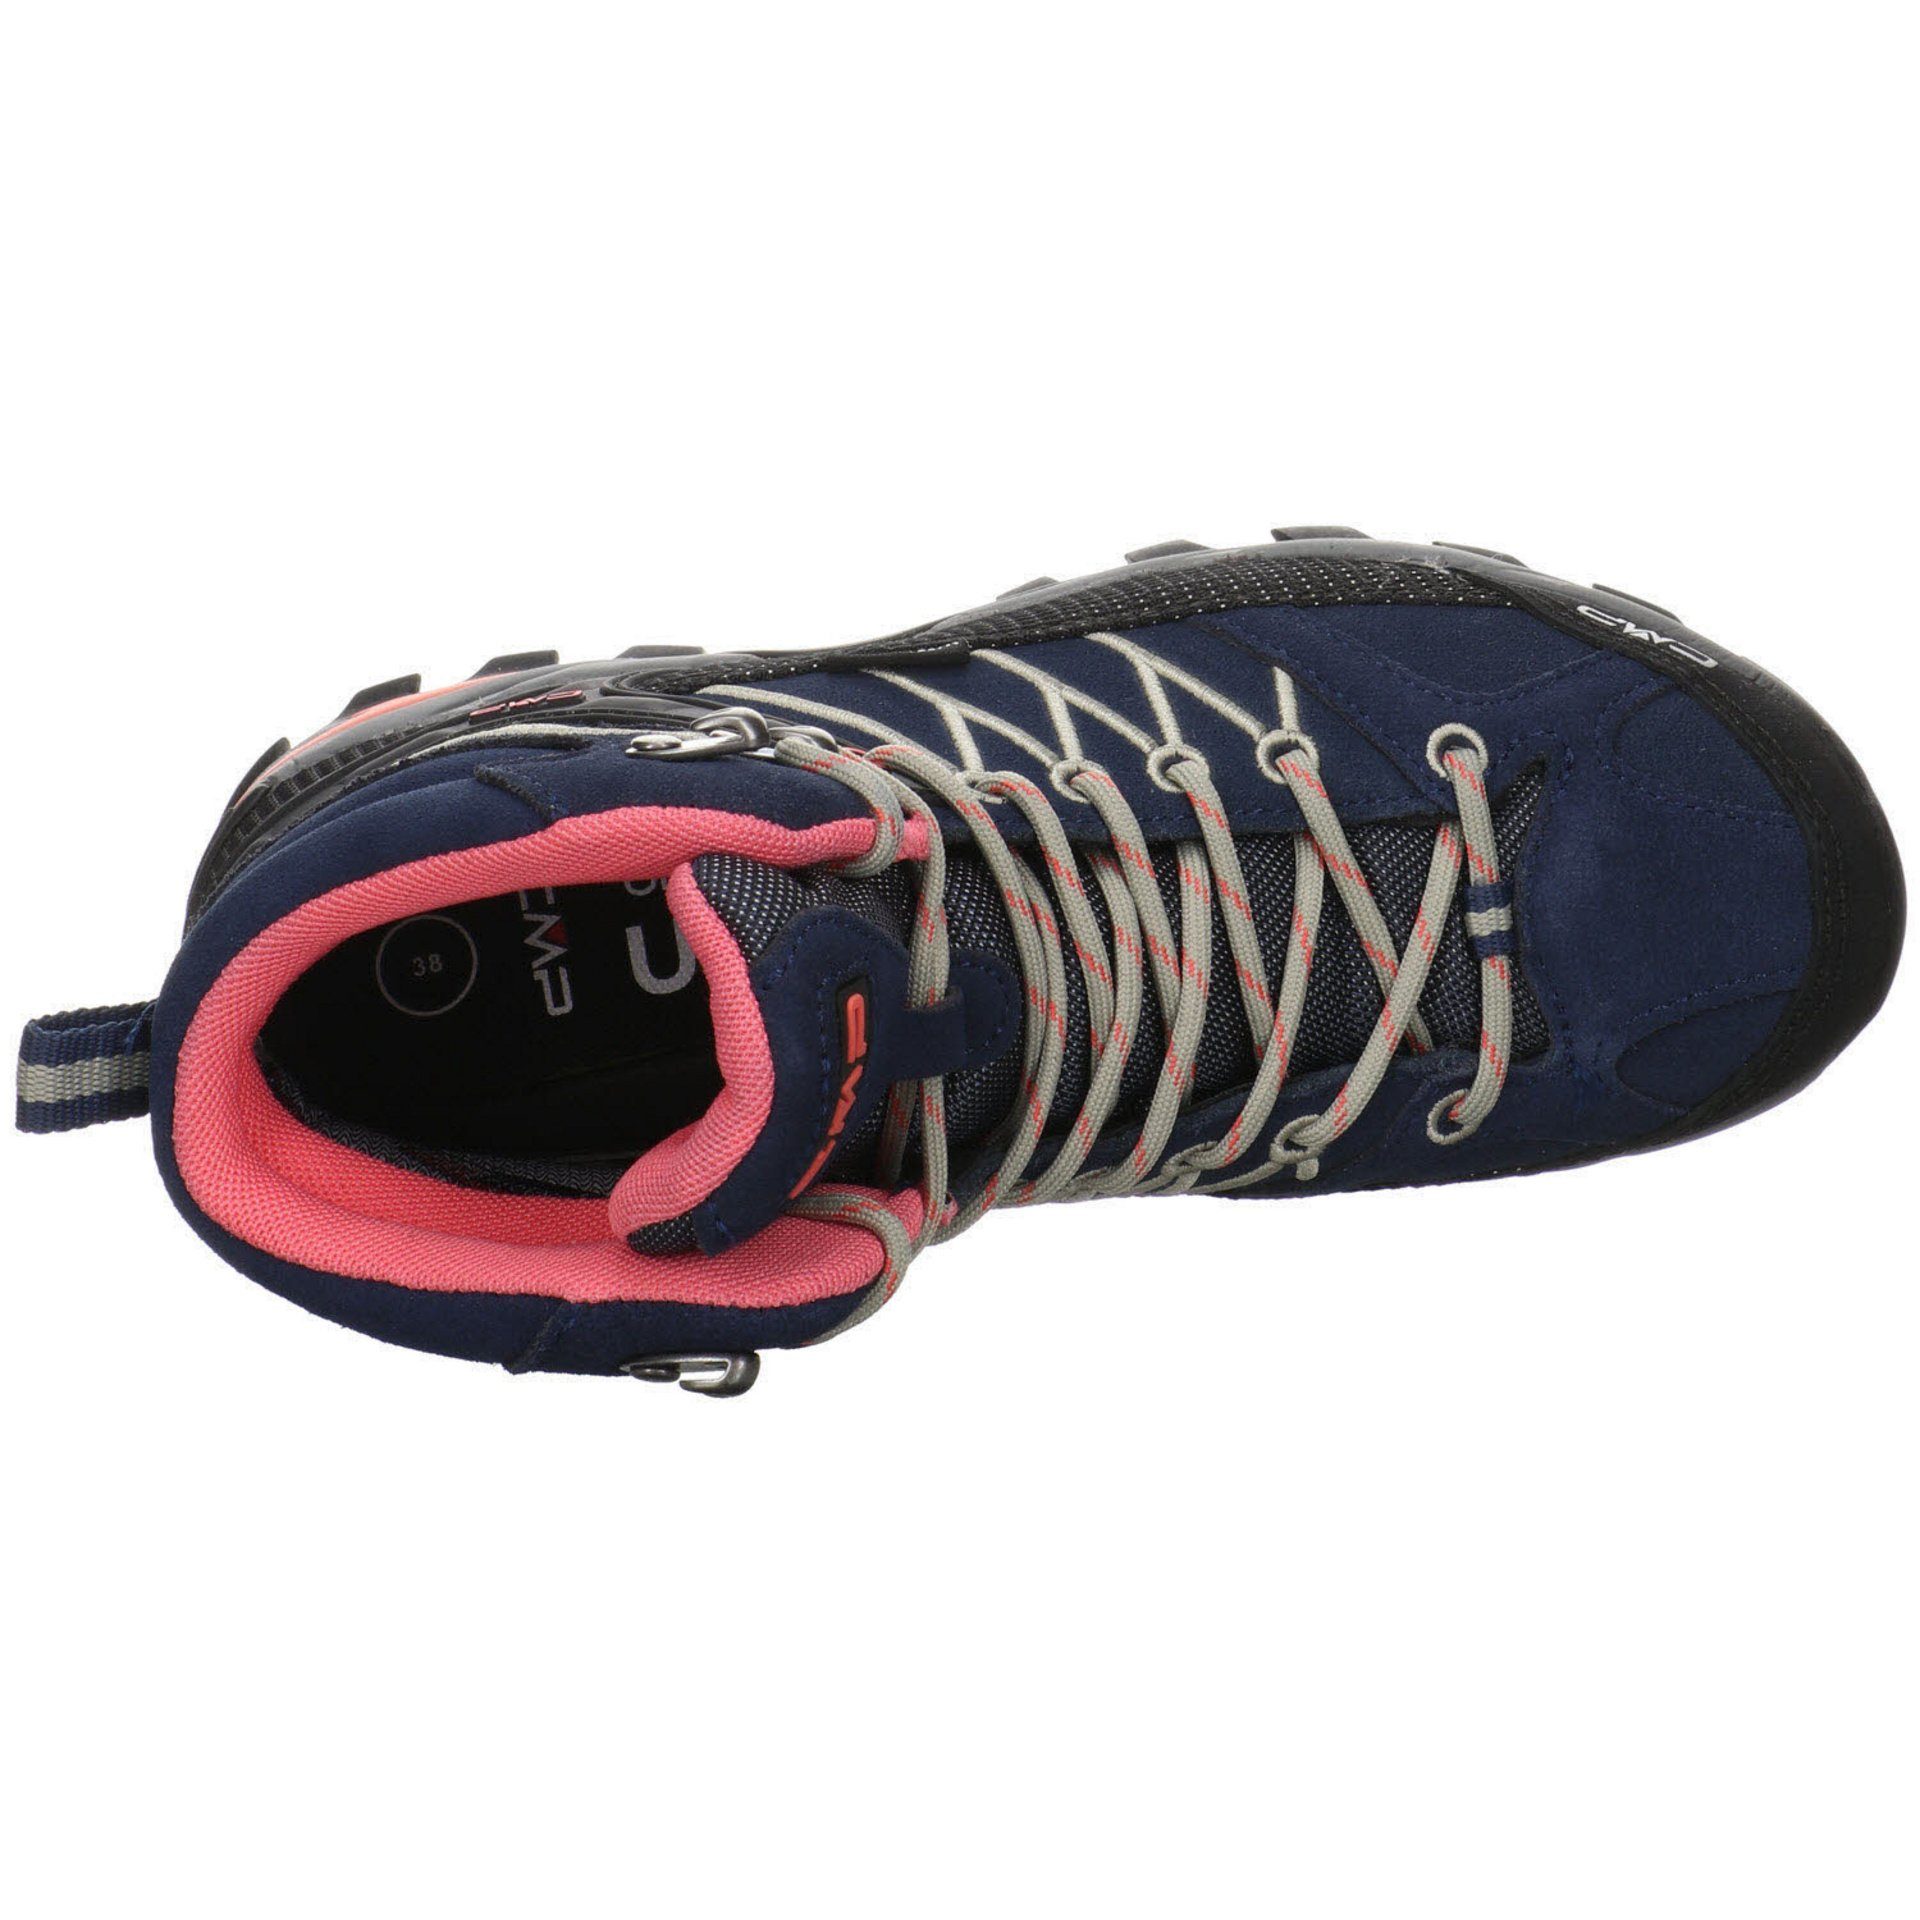 CMP Damen BLUE-CORALLO Schuhe Leder-/Textilkombination Mid Outdoorschuh Outdoor Outdoorschuh Rigel